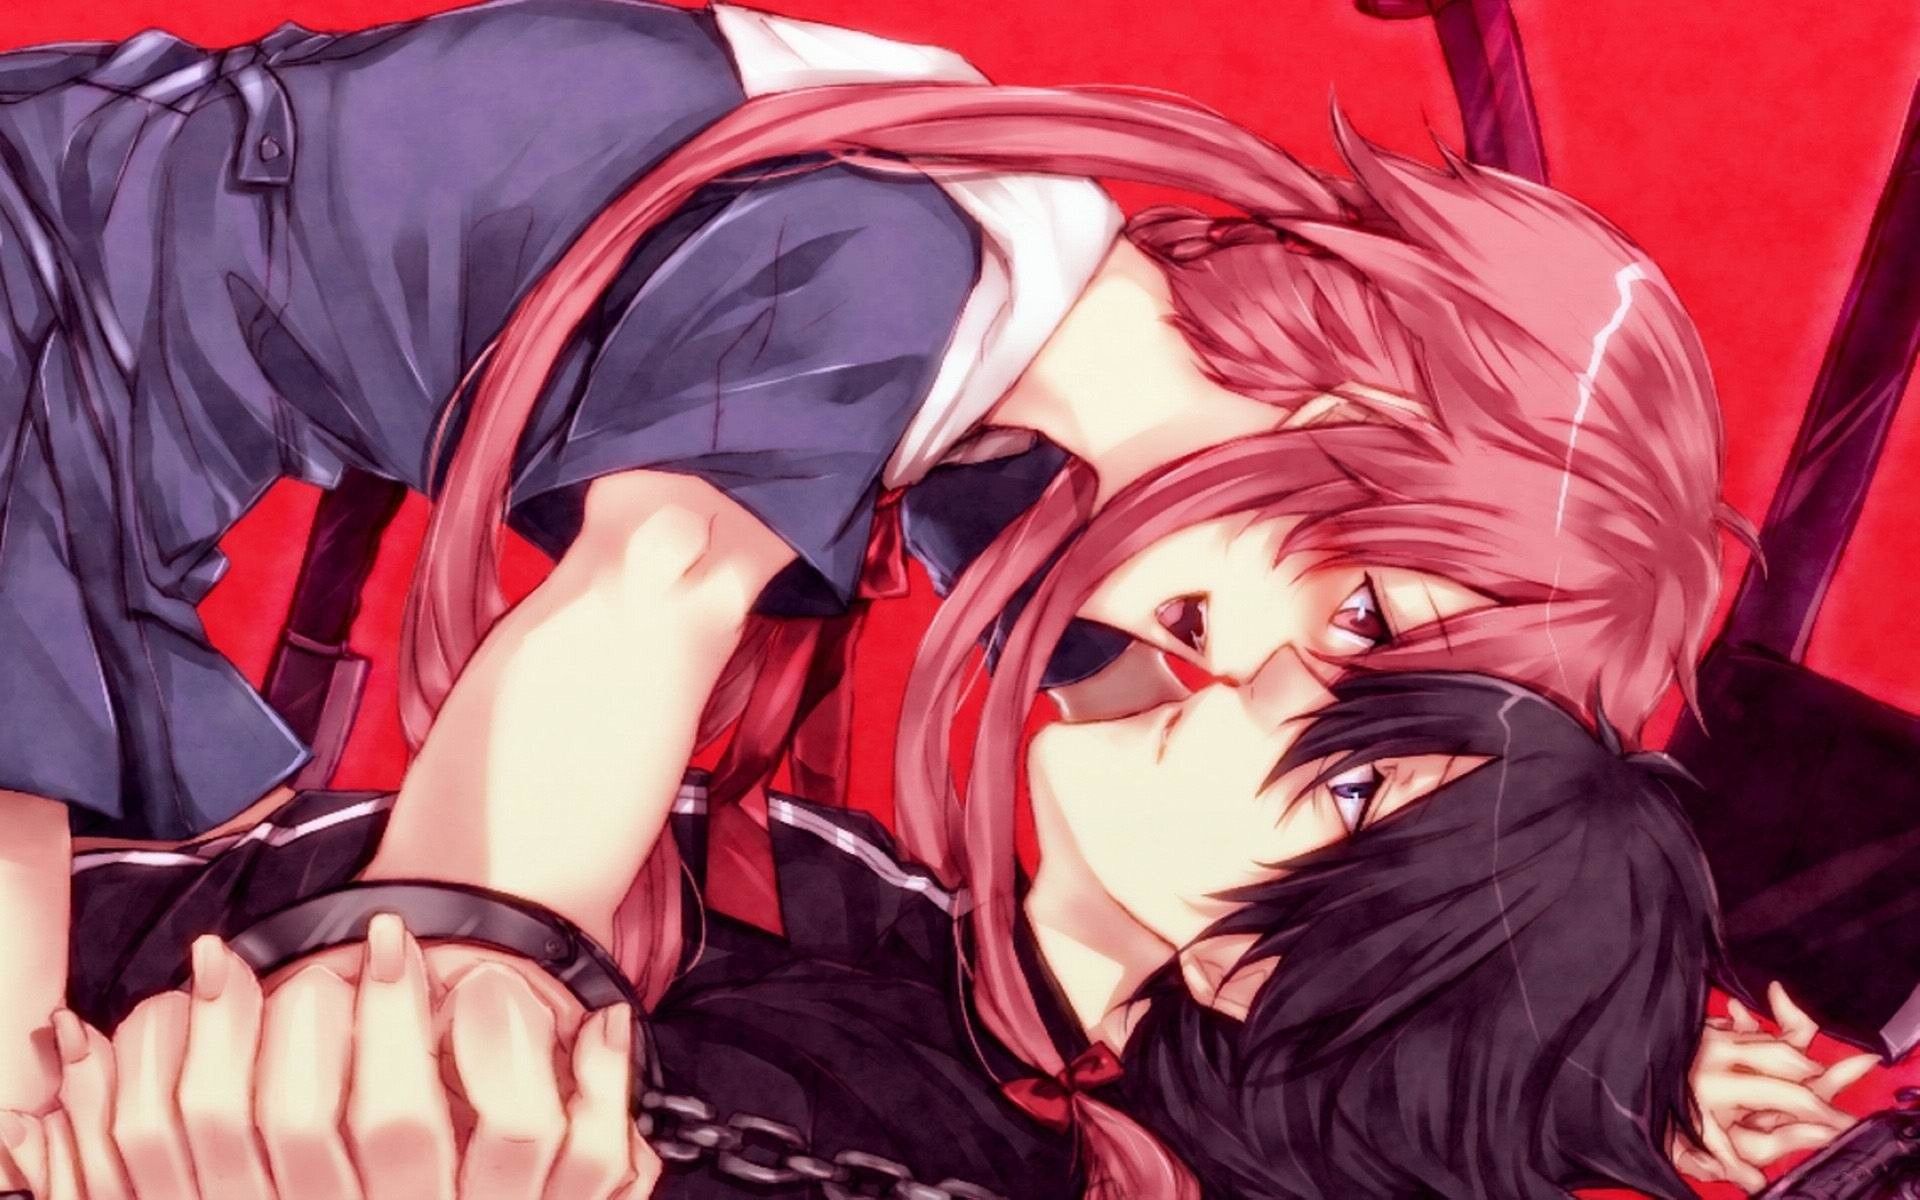 Anime couple kissing #anime #animecouple #kissing #love #t…